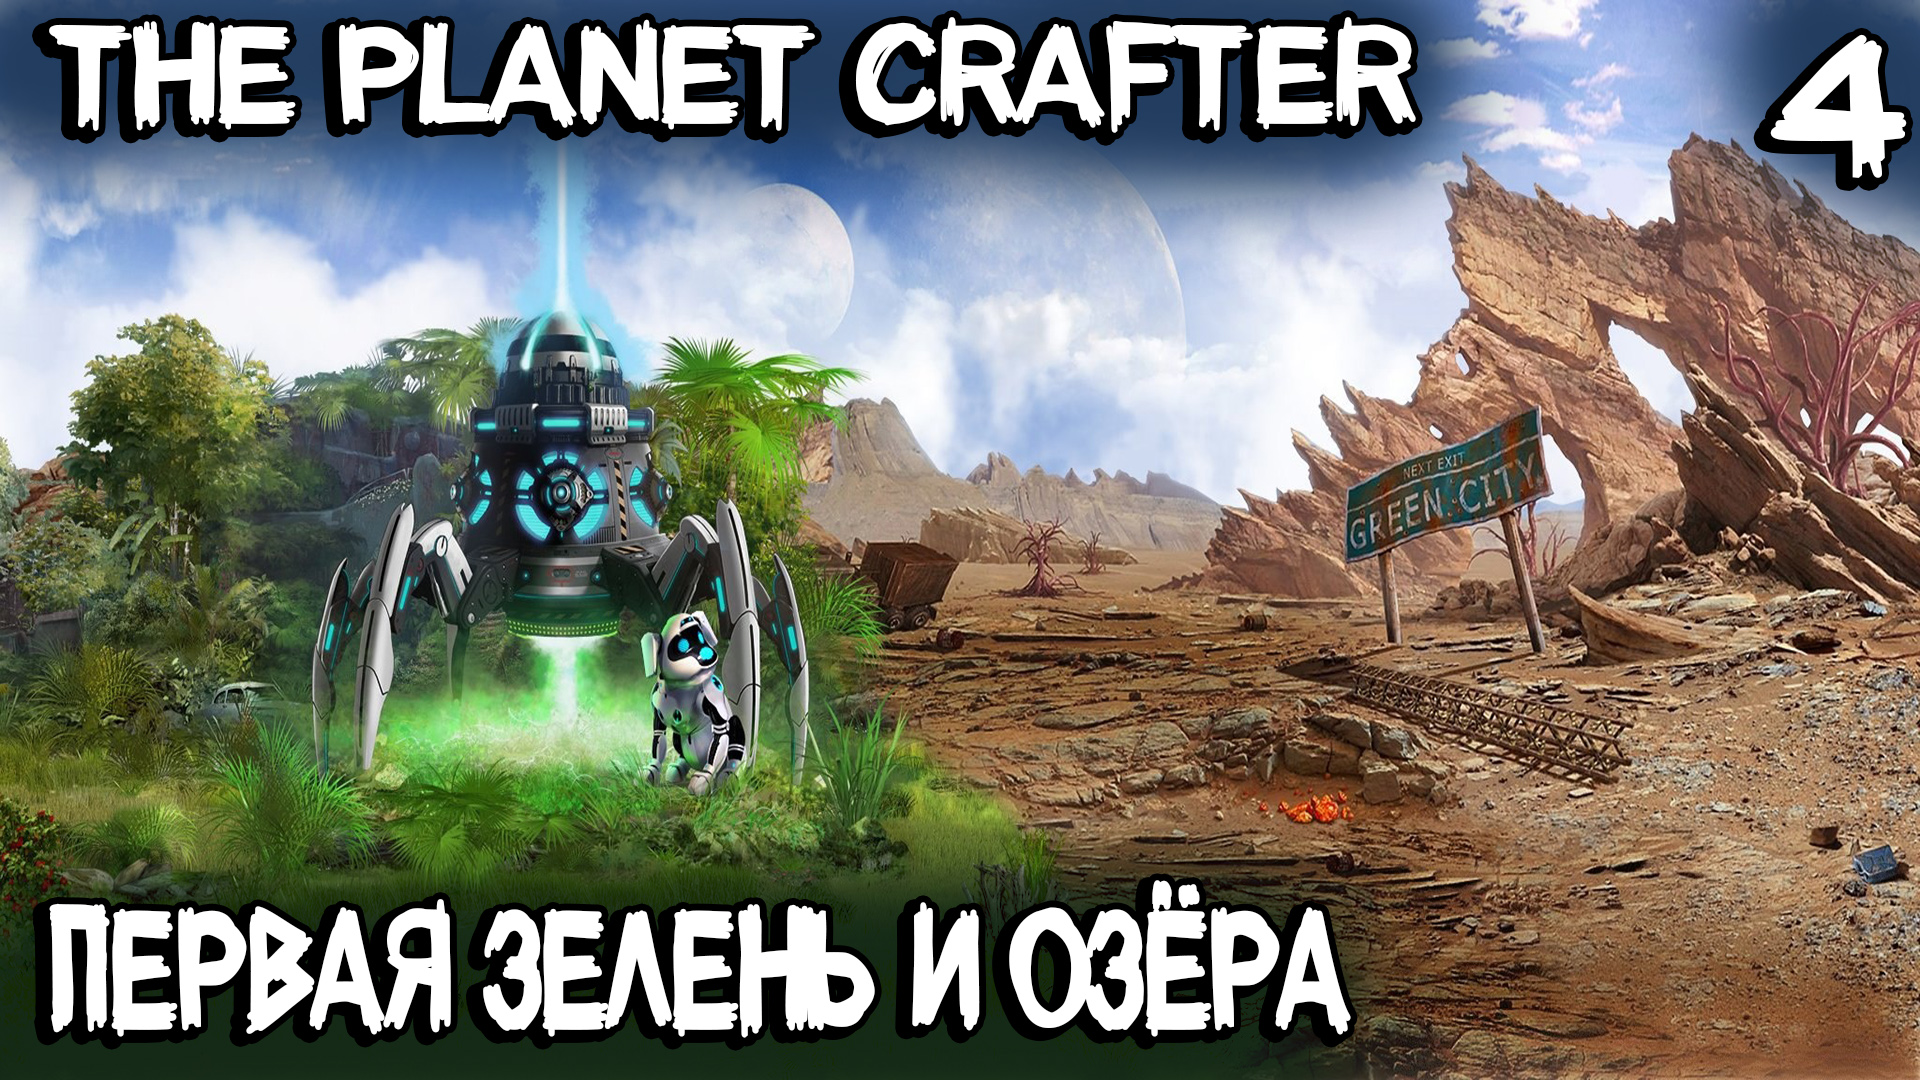 The Planet Crafter - трава и озёра! Где найти уран, запуск ракет, реактивный ранец и карта мира #4